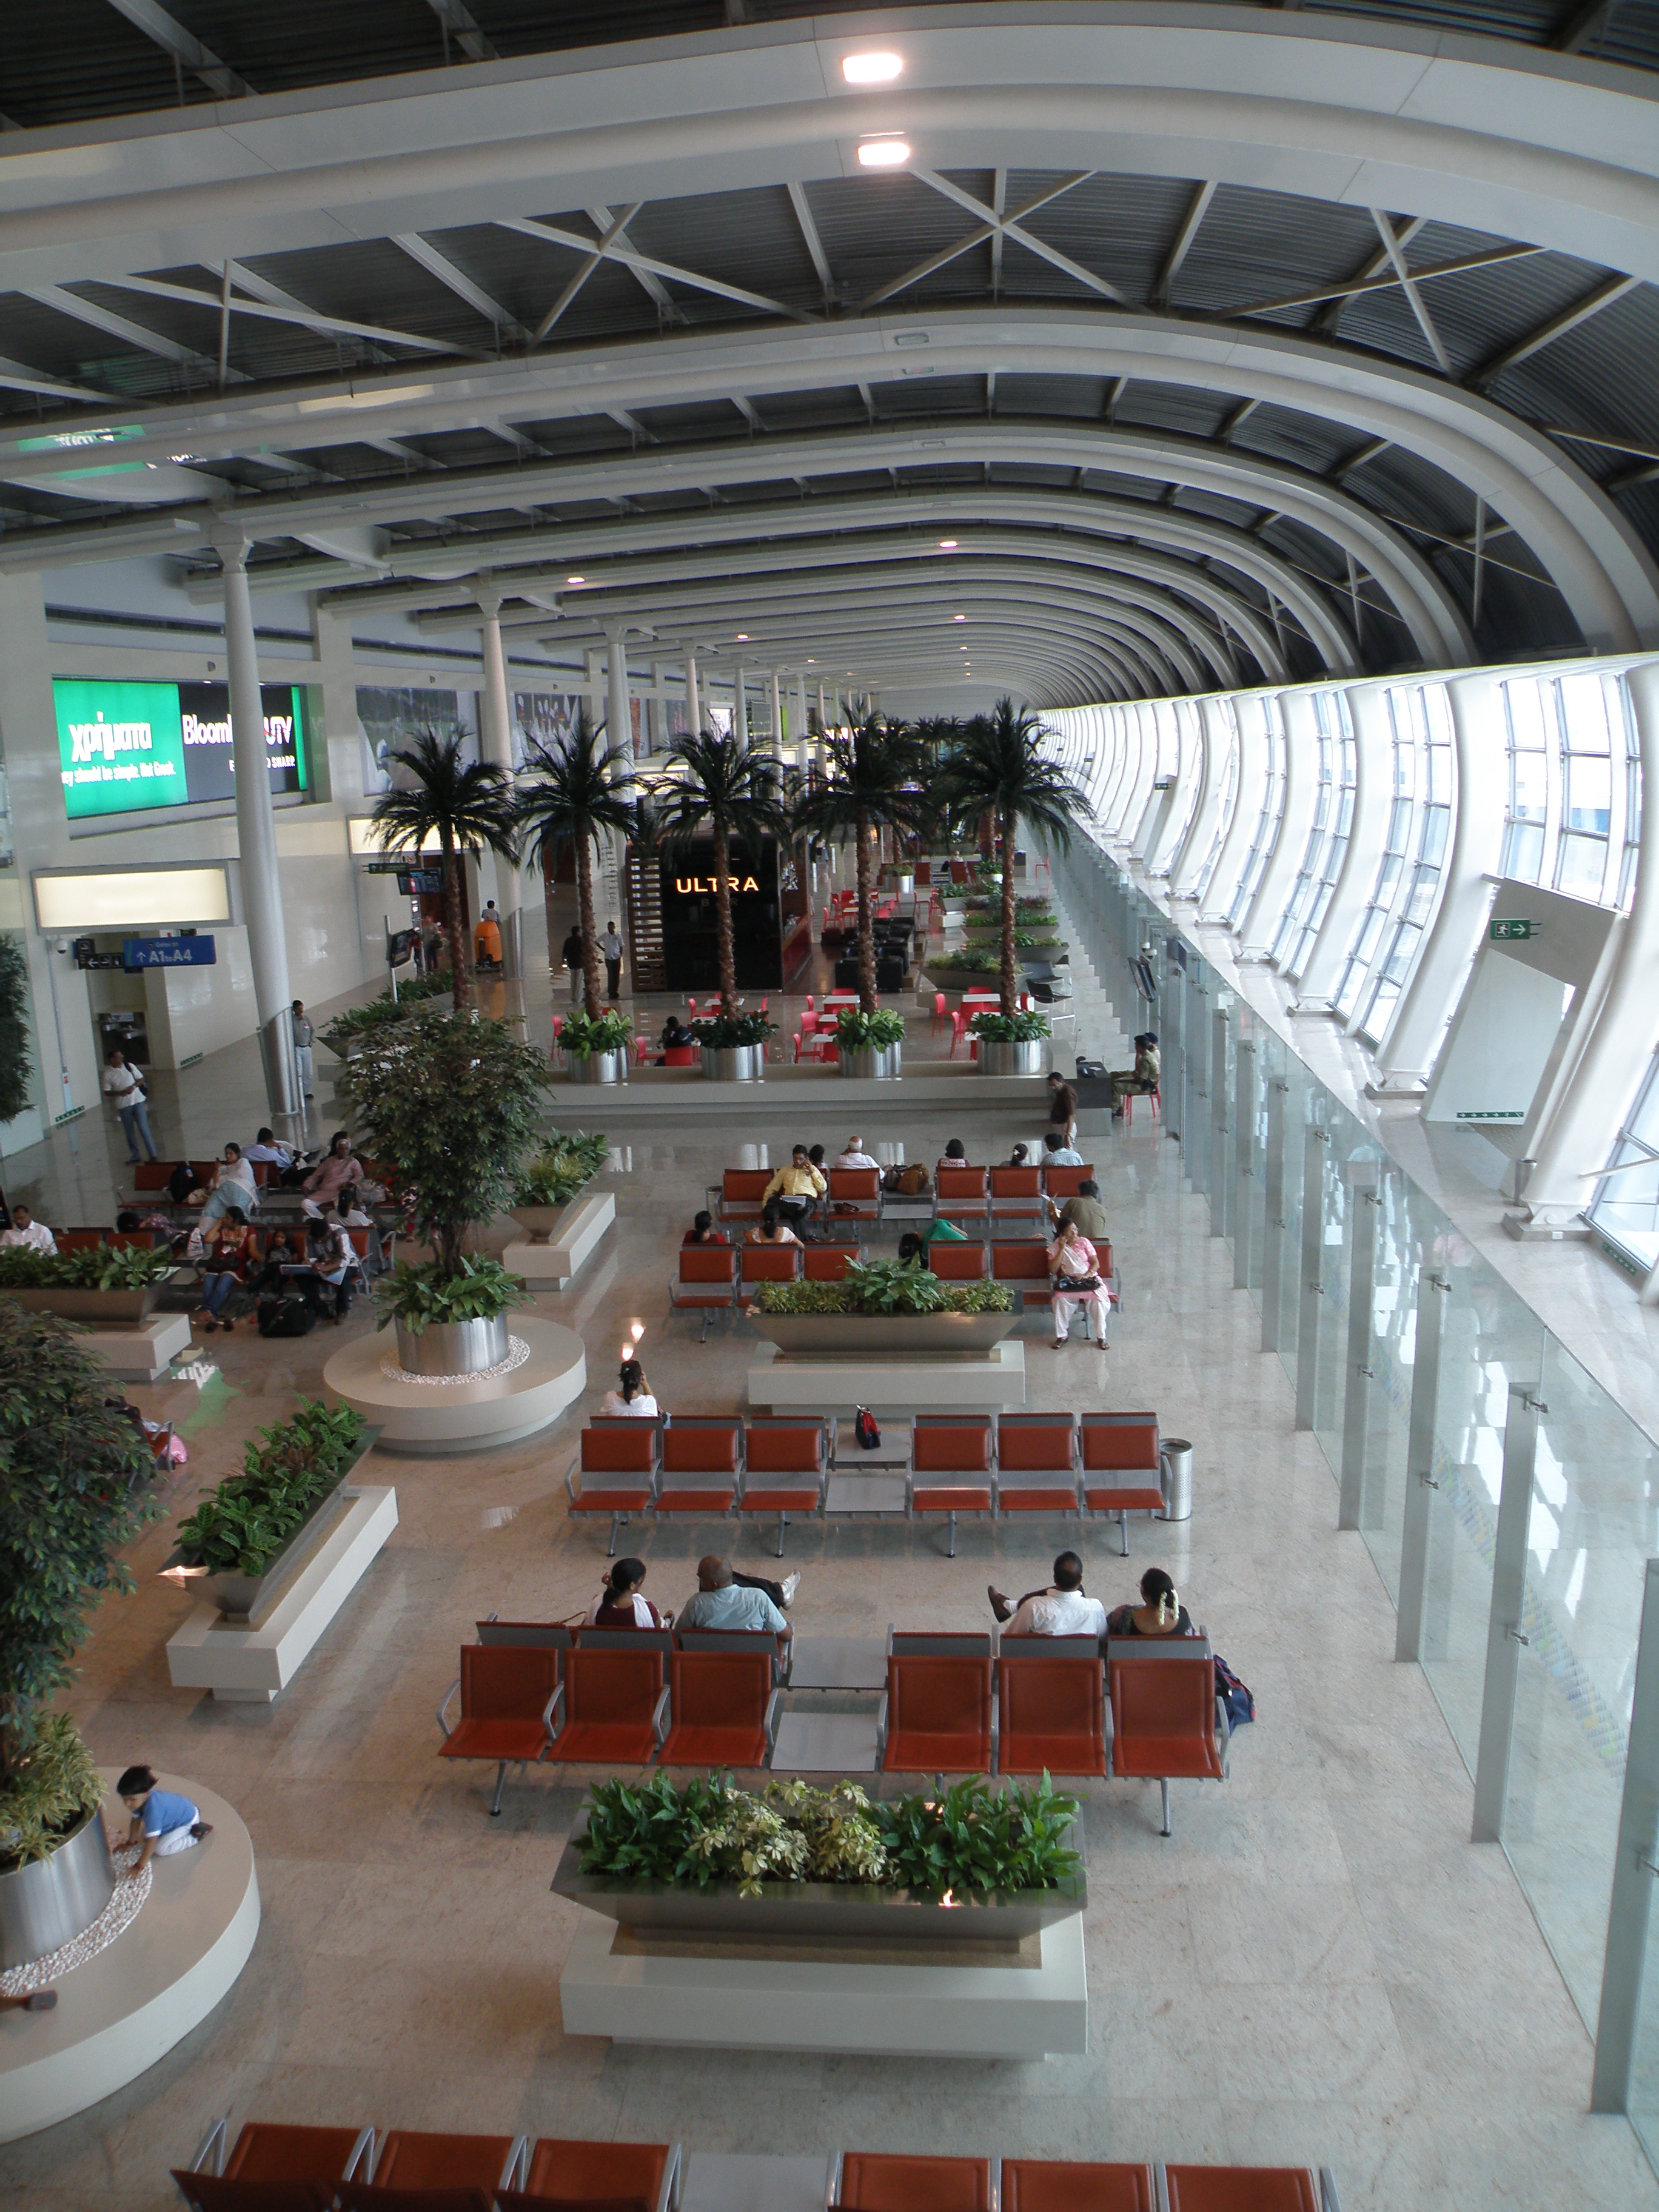 Mumbai_airport_domestic_departure_terminal_1C_(7).JPG